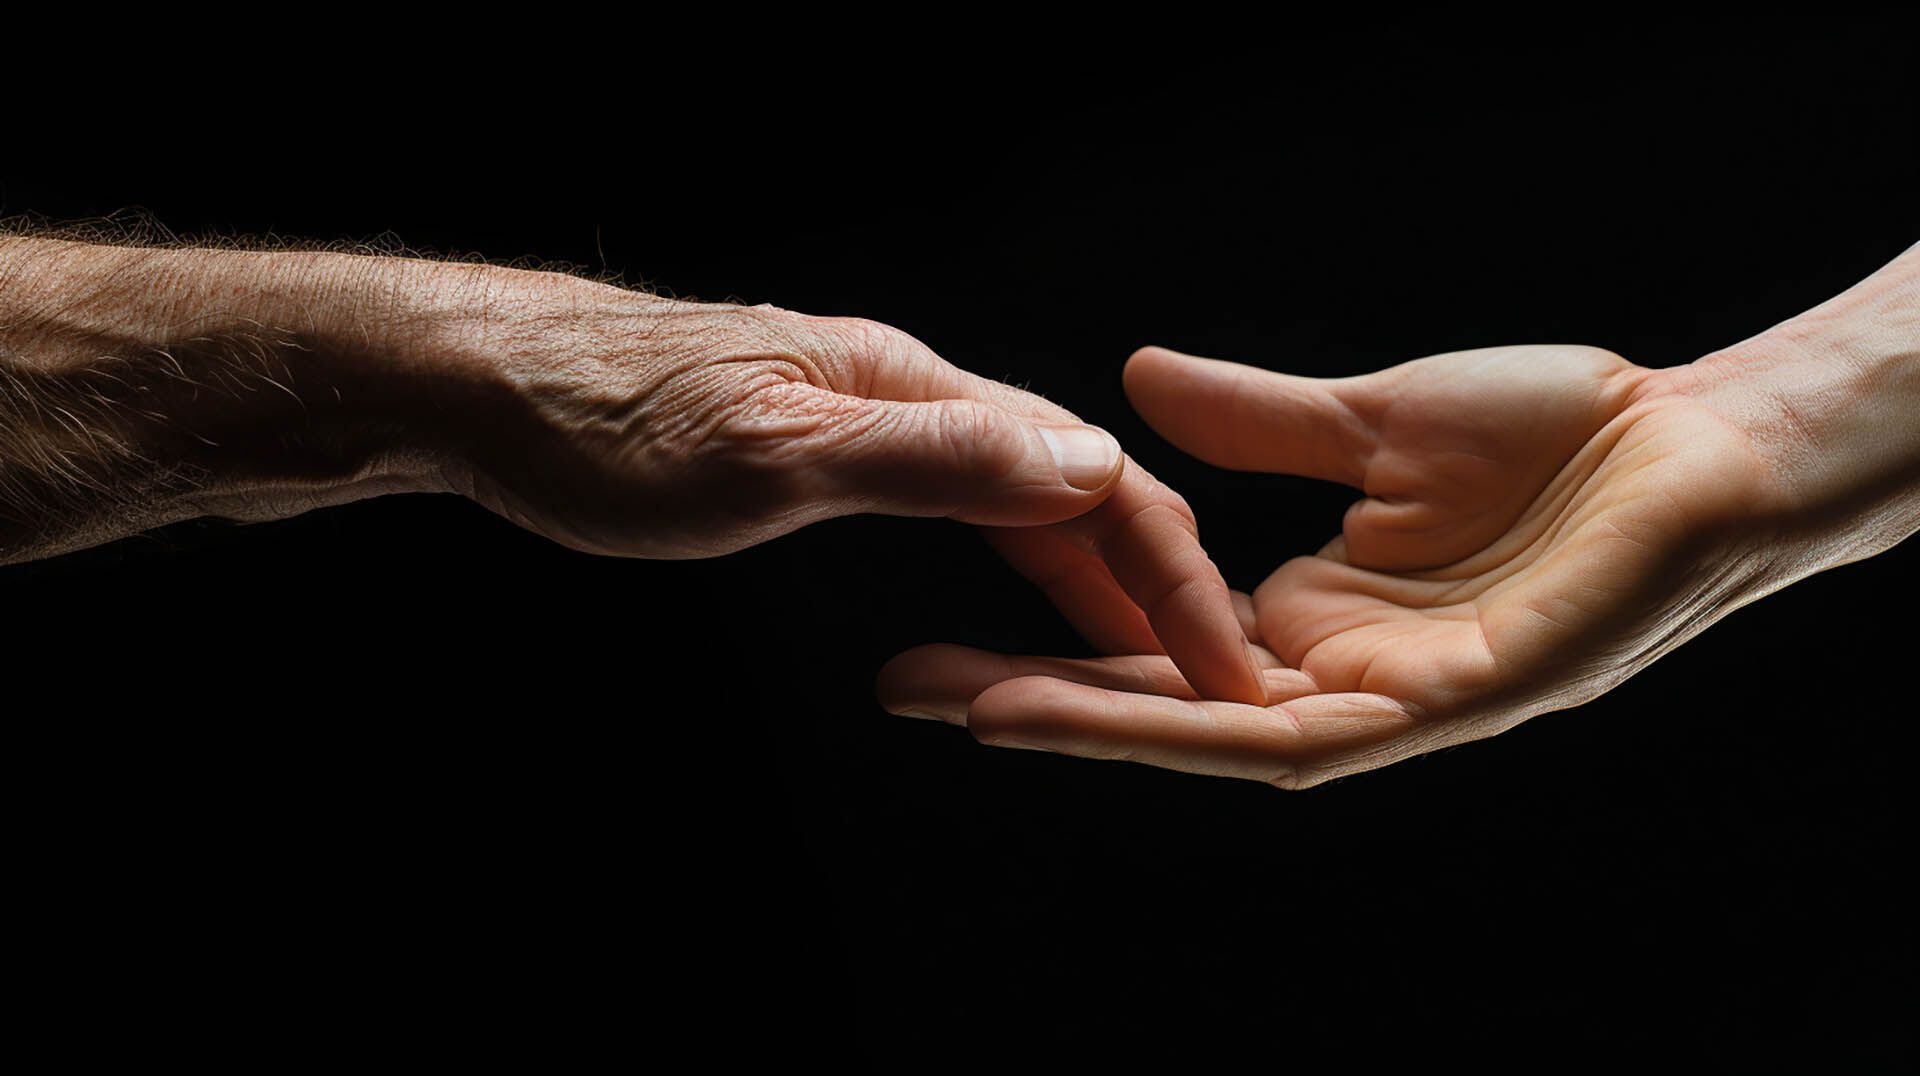 Una mano arrugada y envejecida tocando suavemente el dedo de una mano joven y tersa, representando la unión de generaciones y la esperanza de la ciencia en prolongar la vida.